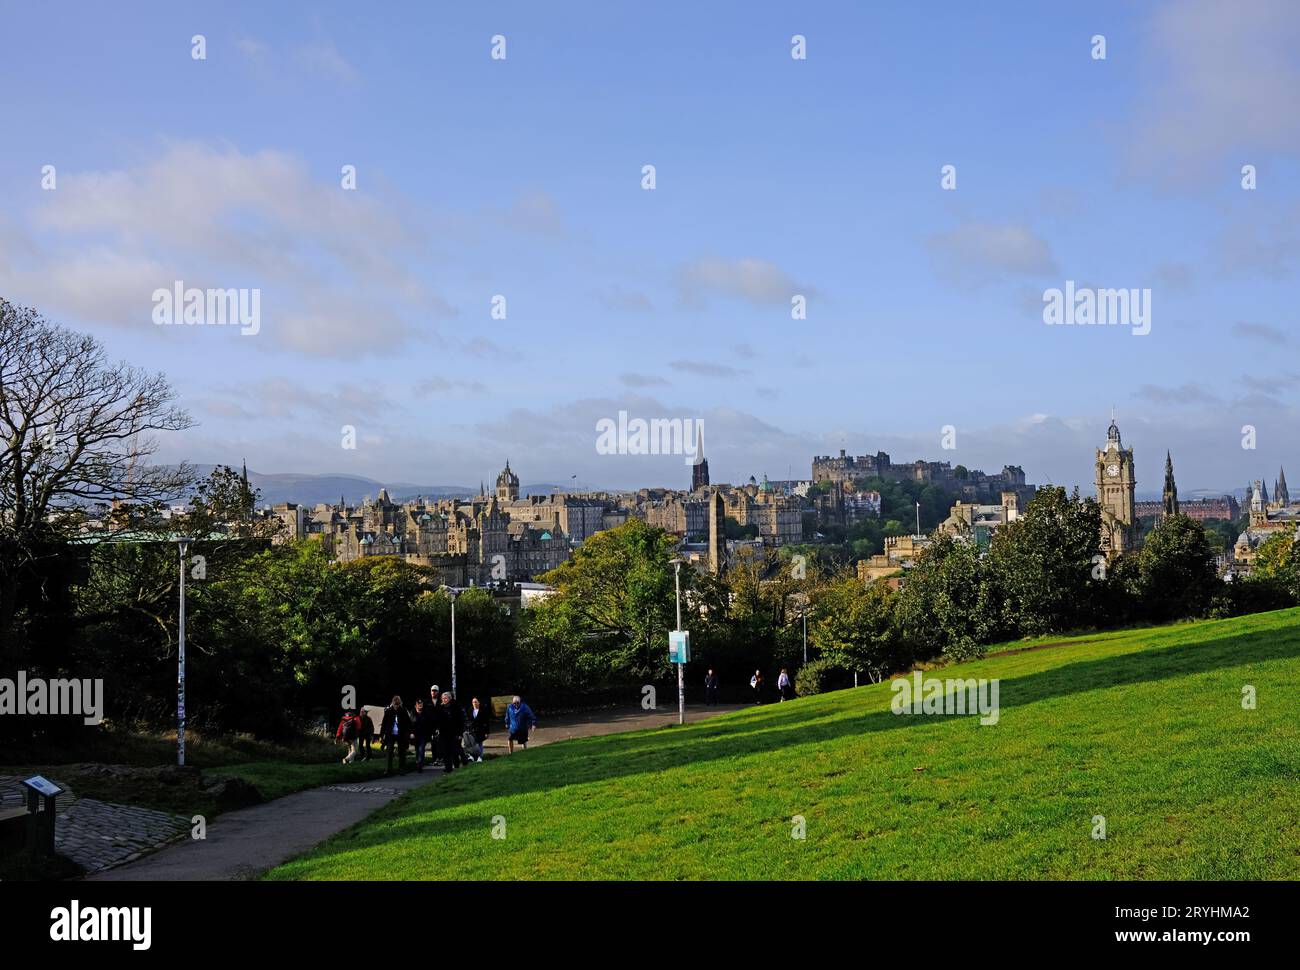 Edimbourg et le château, vue panoramique, vue depuis Calton Hill, Écosse Banque D'Images